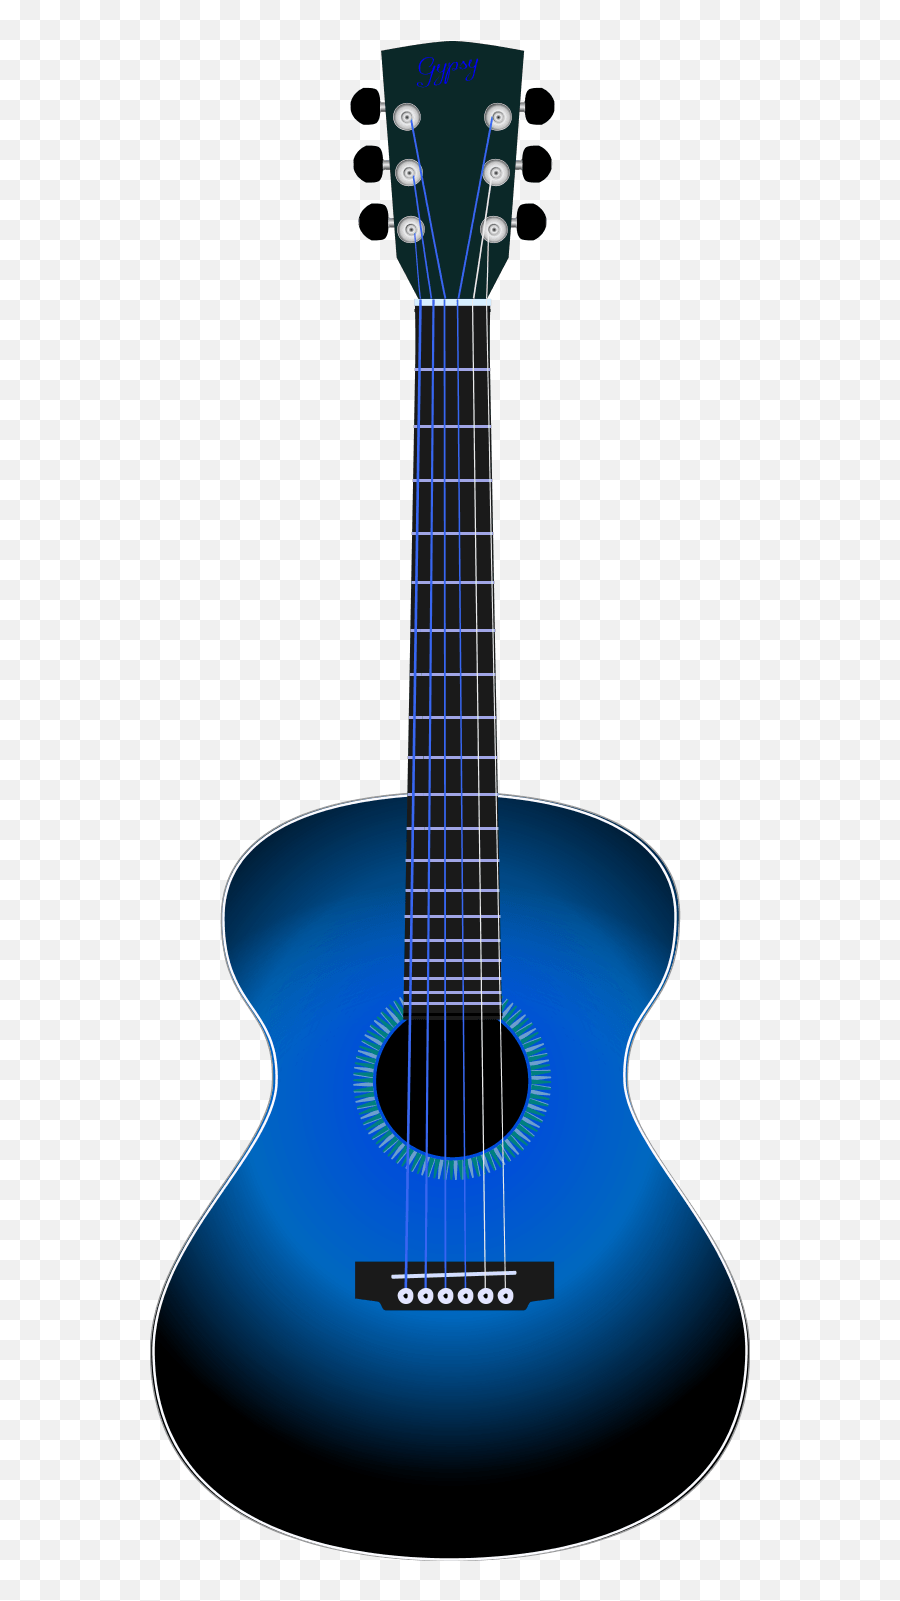 Free Transparent Acoustic Guitar - Acoustic Guitar Clipart Png,Acoustic Guitar Transparent Background